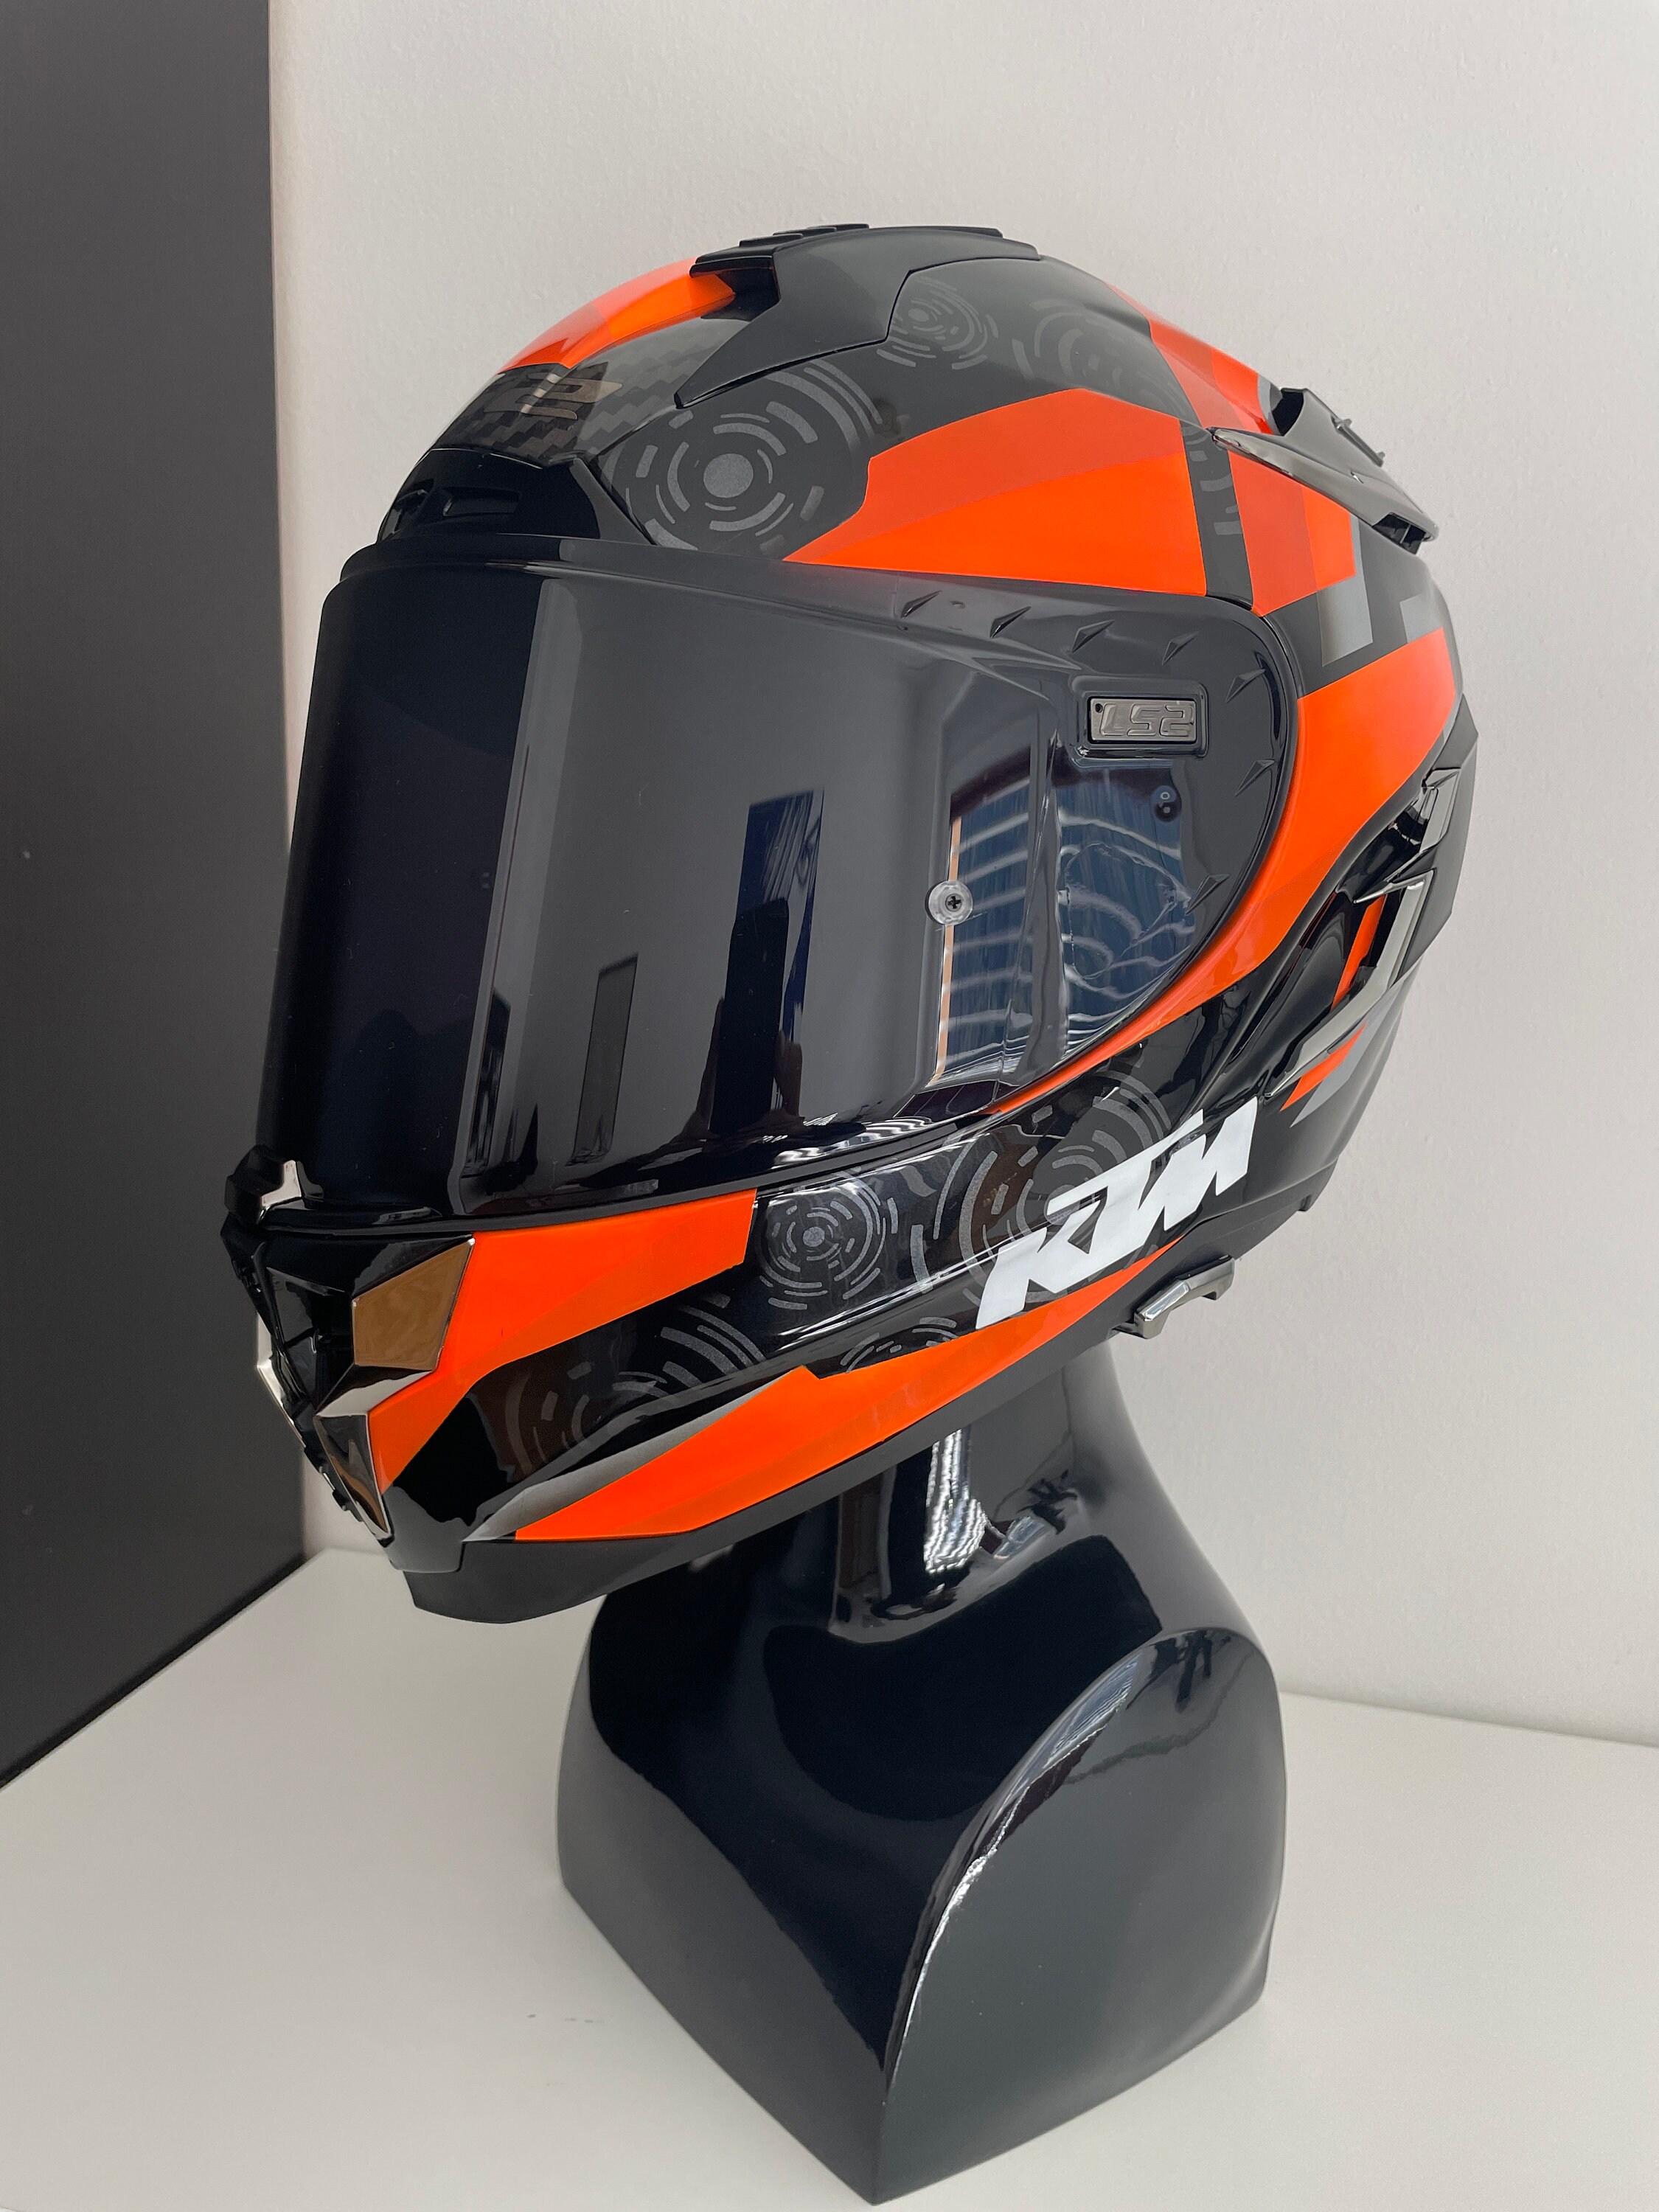 Miniatur-Helm-Aufkleber zum fairen Preis - Produktvorstellung - Motorsport  XL